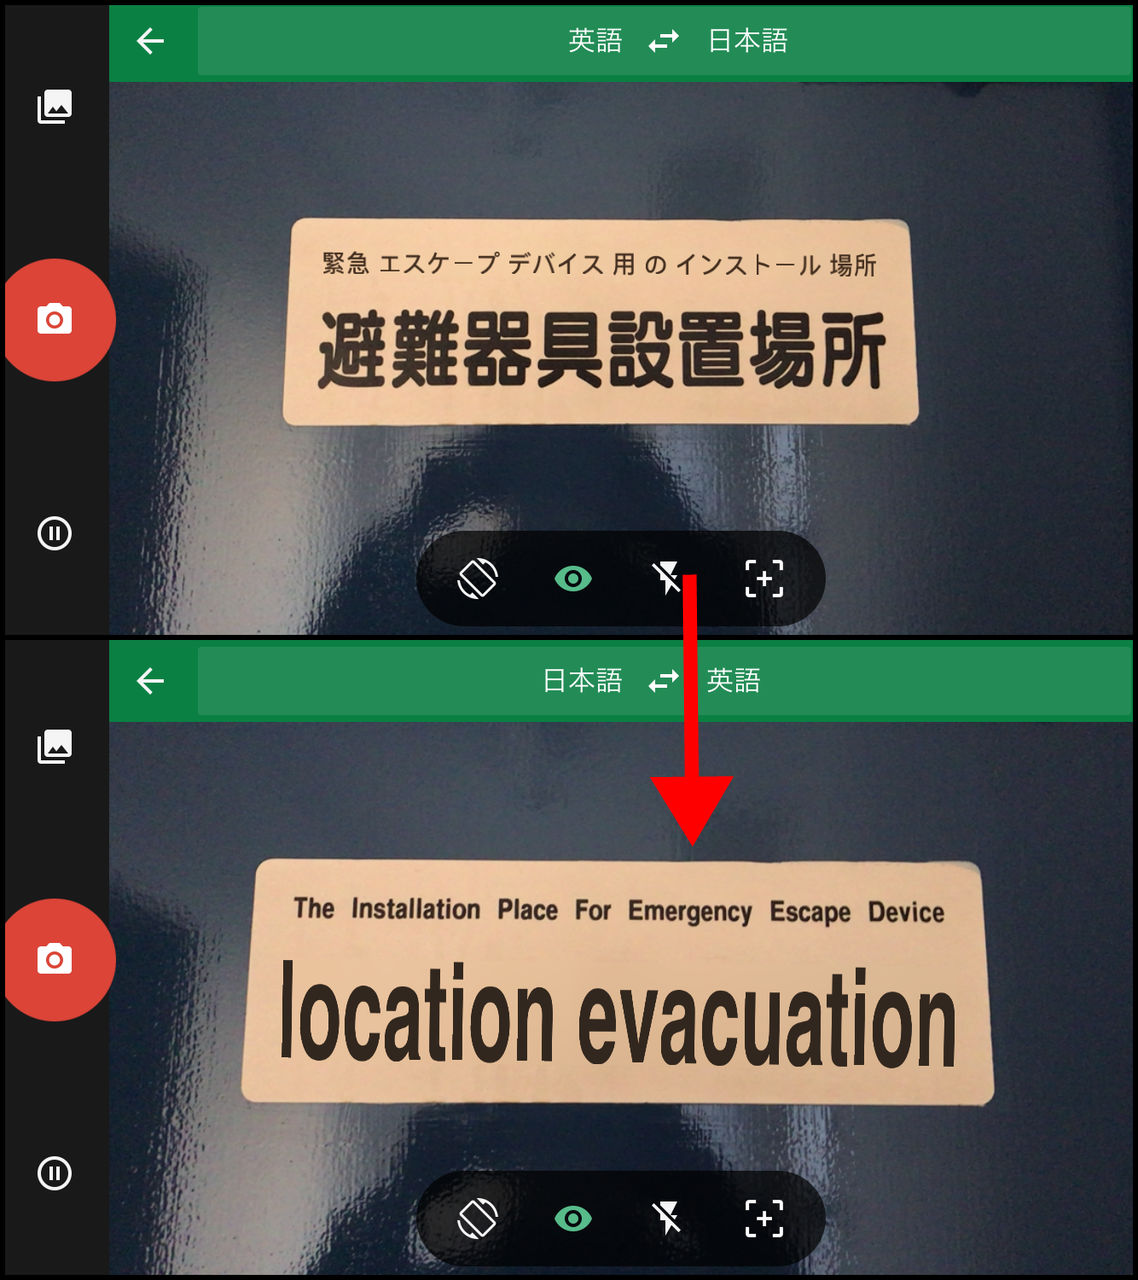 Google翻訳アプリの新機能「リアルタイム カメラ翻訳」を使いまくってみた - GIGAZINE